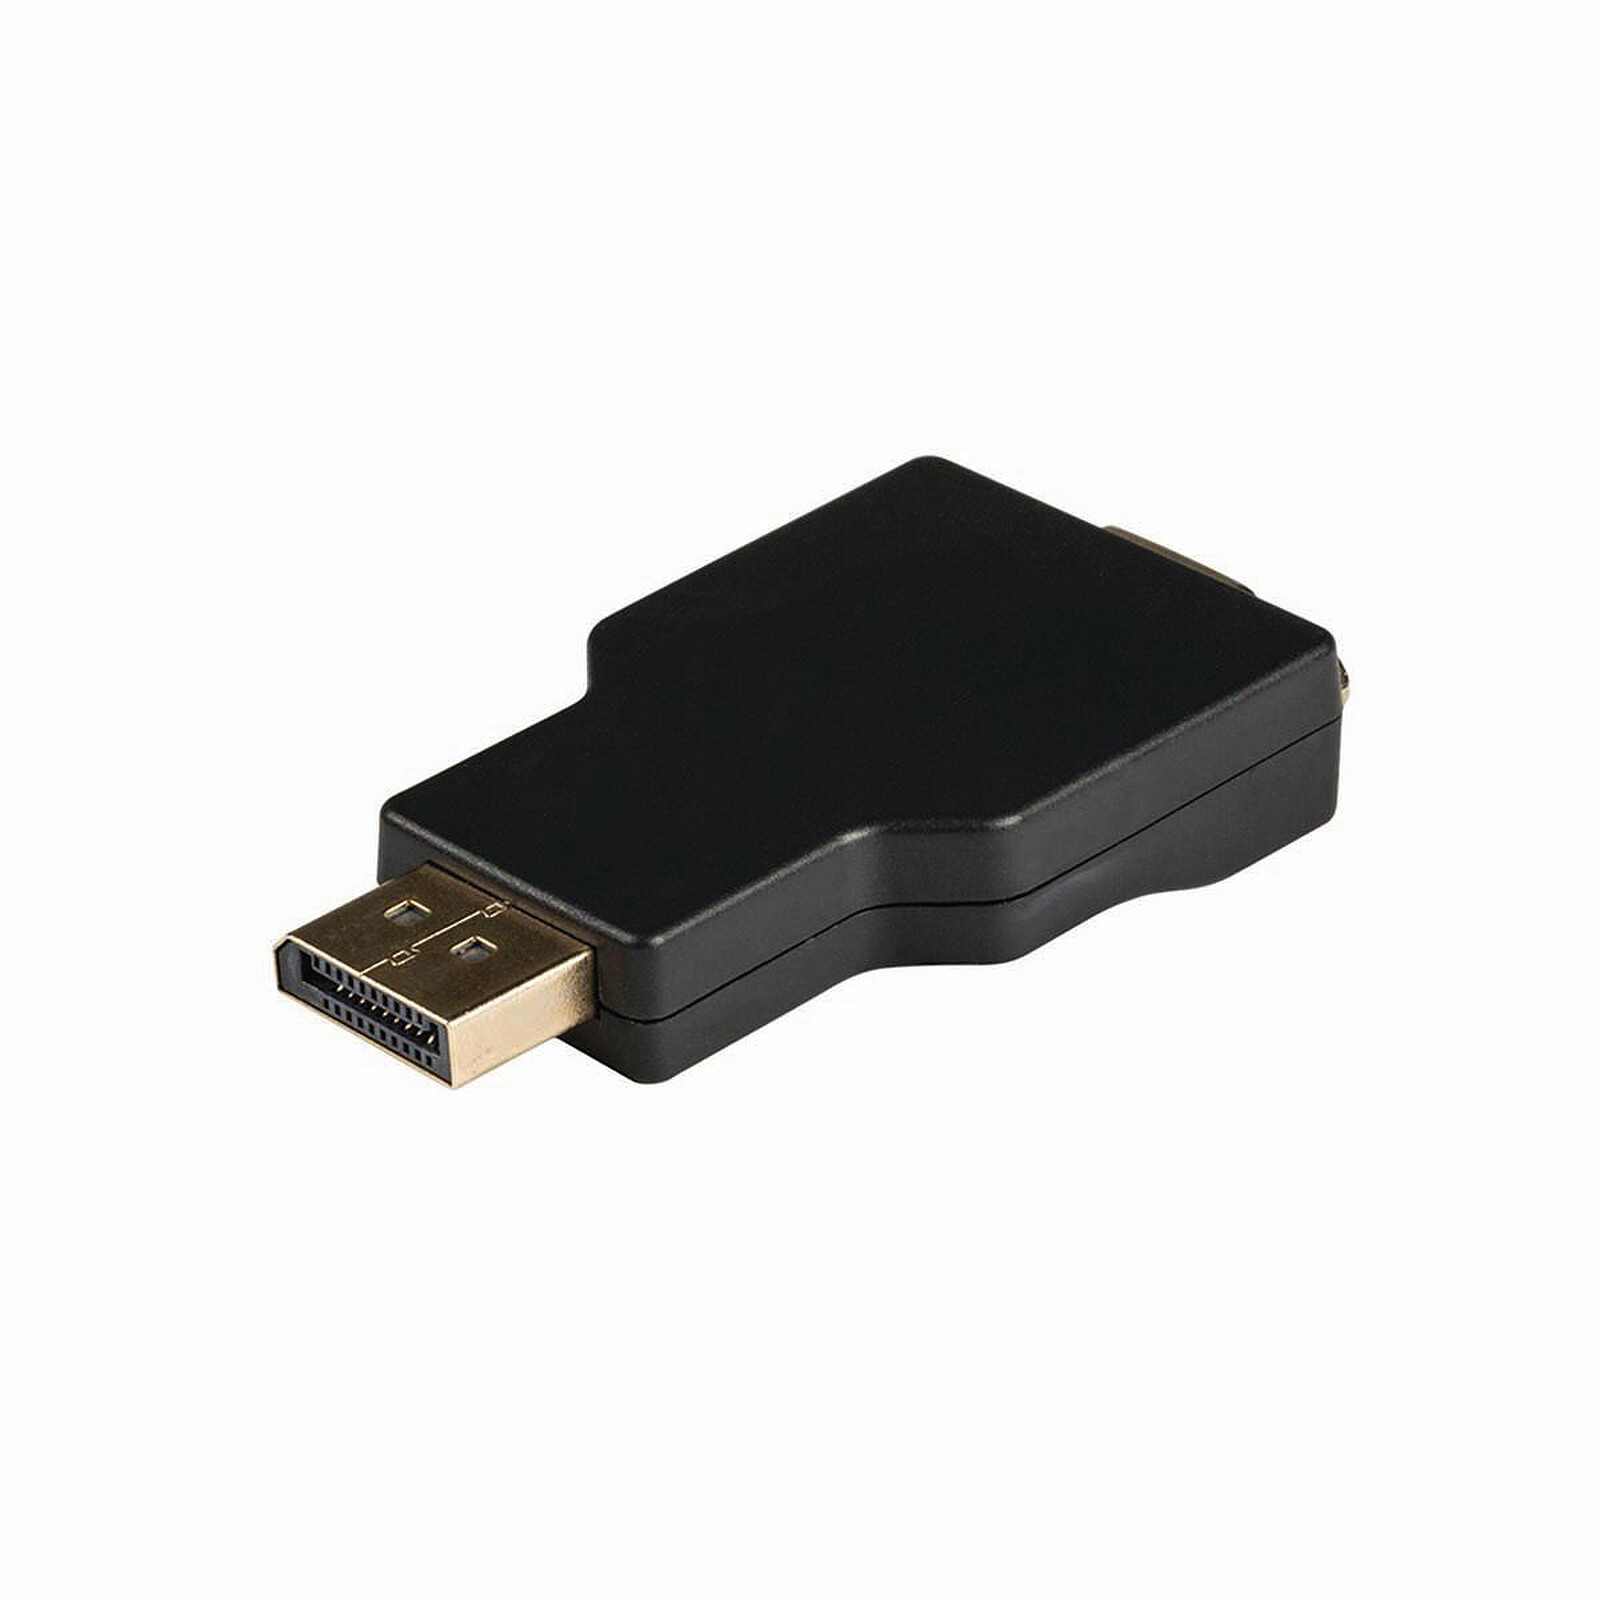 Adaptateur DisplayPort mâle - D-SUB HD 15 pôles (VGA) femelle